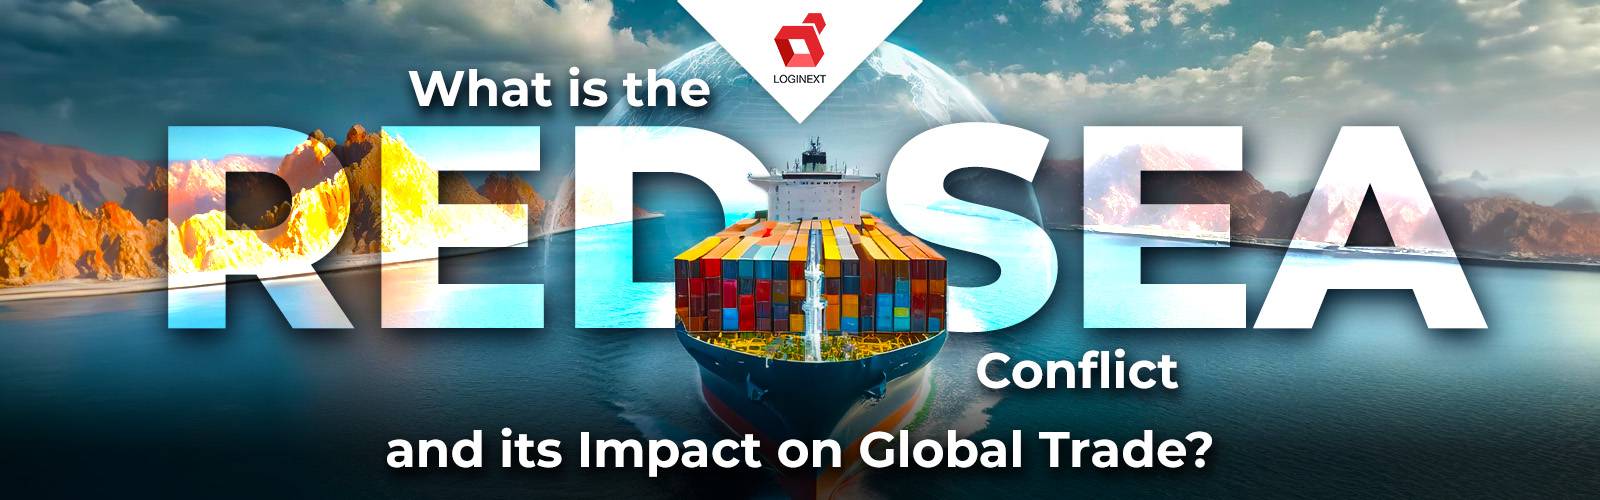 ¿Qué es el conflicto del Mar Rojo y su impacto en el comercio global?